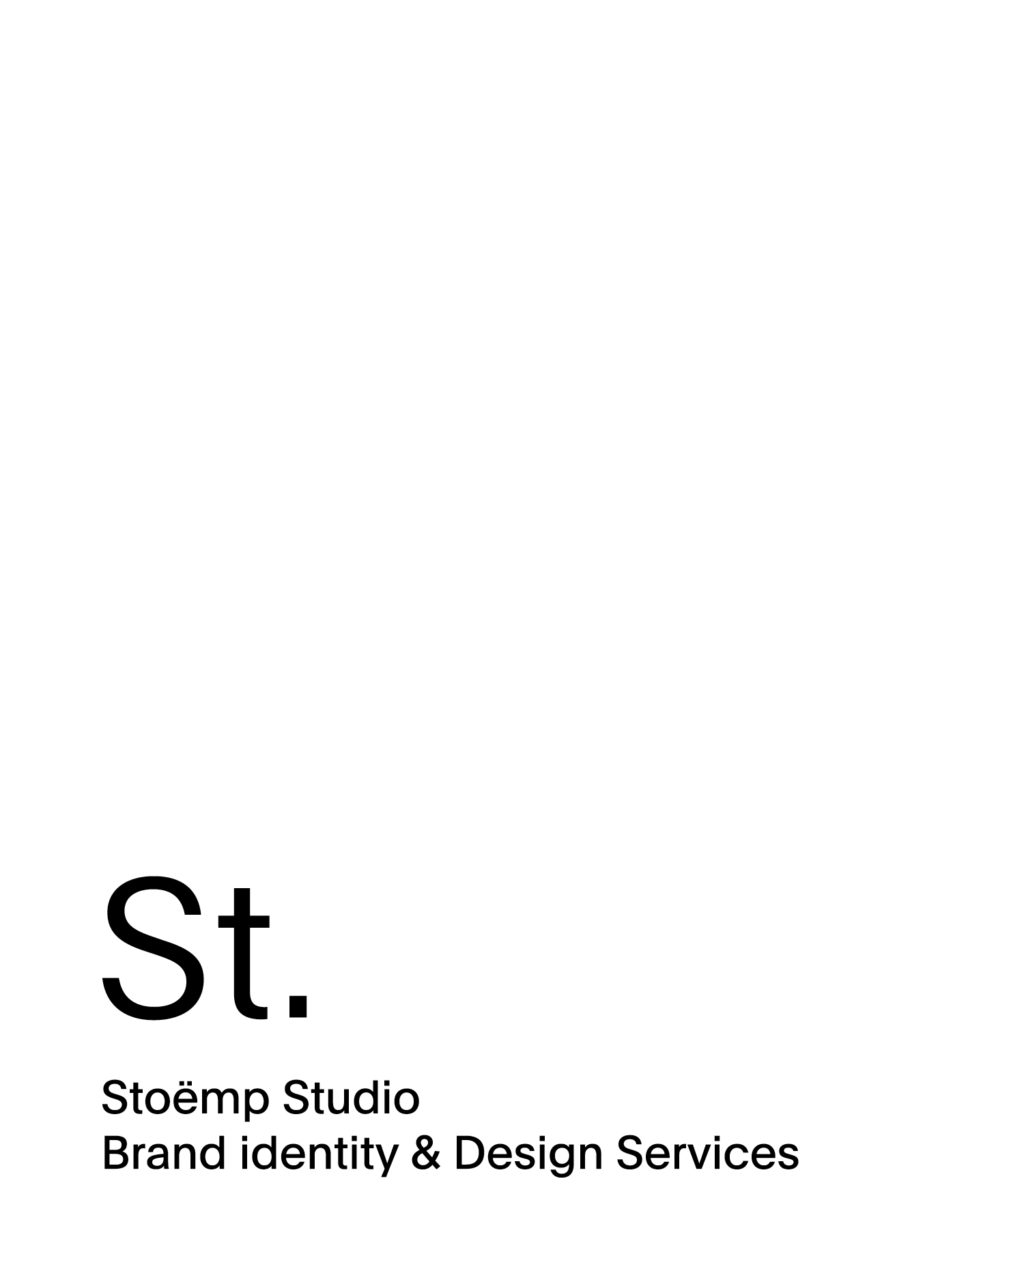 Stoemp Studio